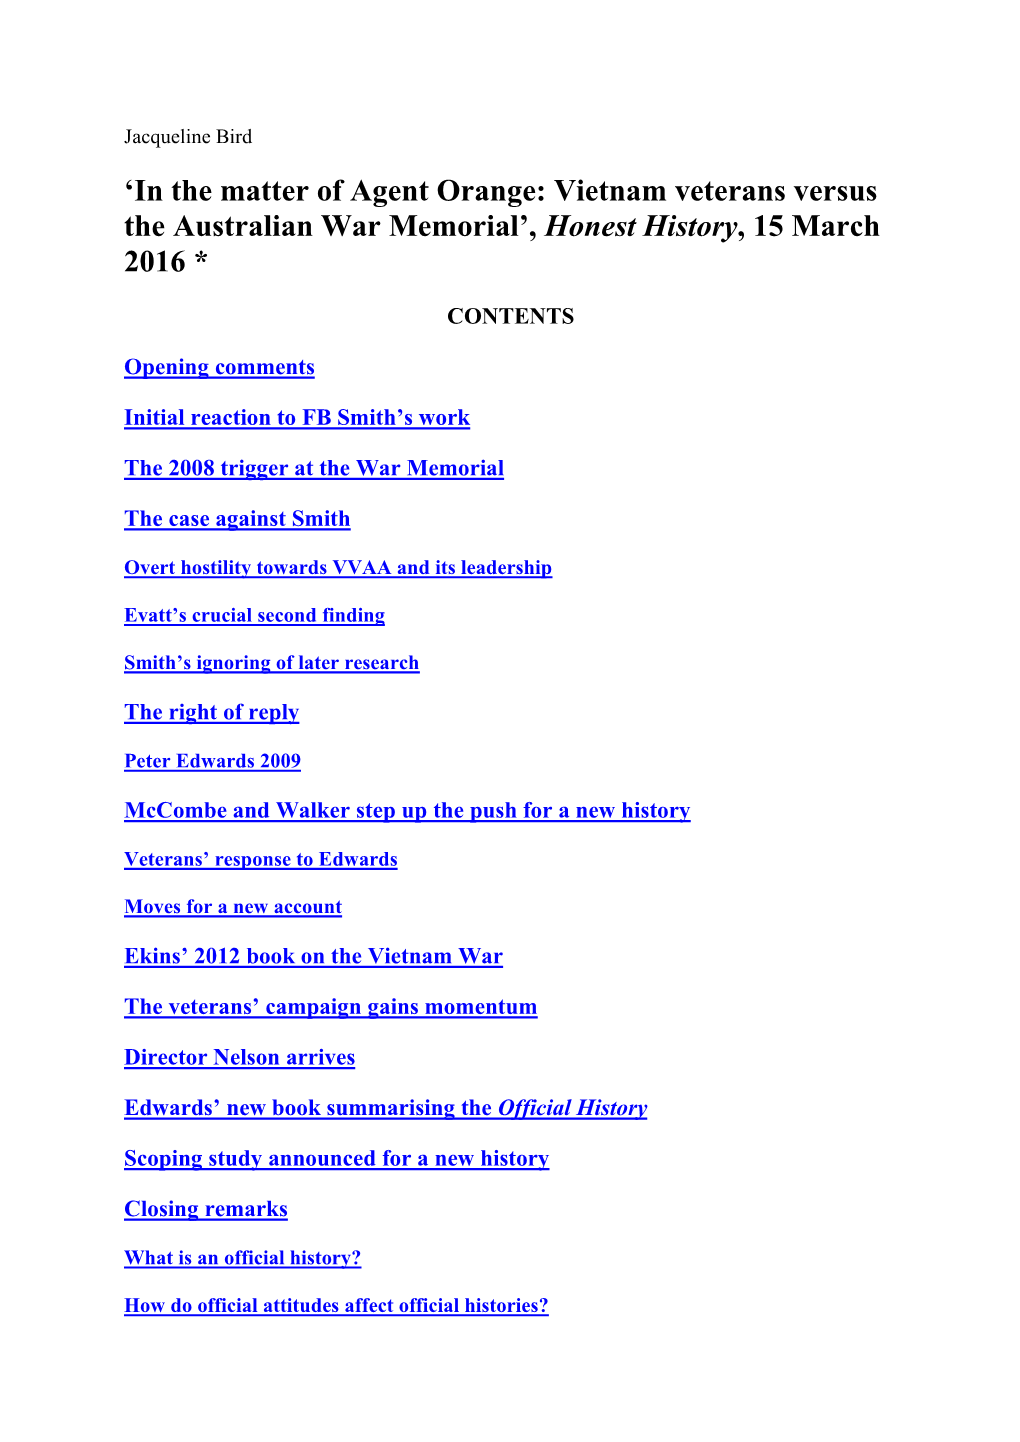 'In the Matter of Agent Orange: Vietnam Veterans Versus the Australian War Memorial', Honest History, 15 March 2016